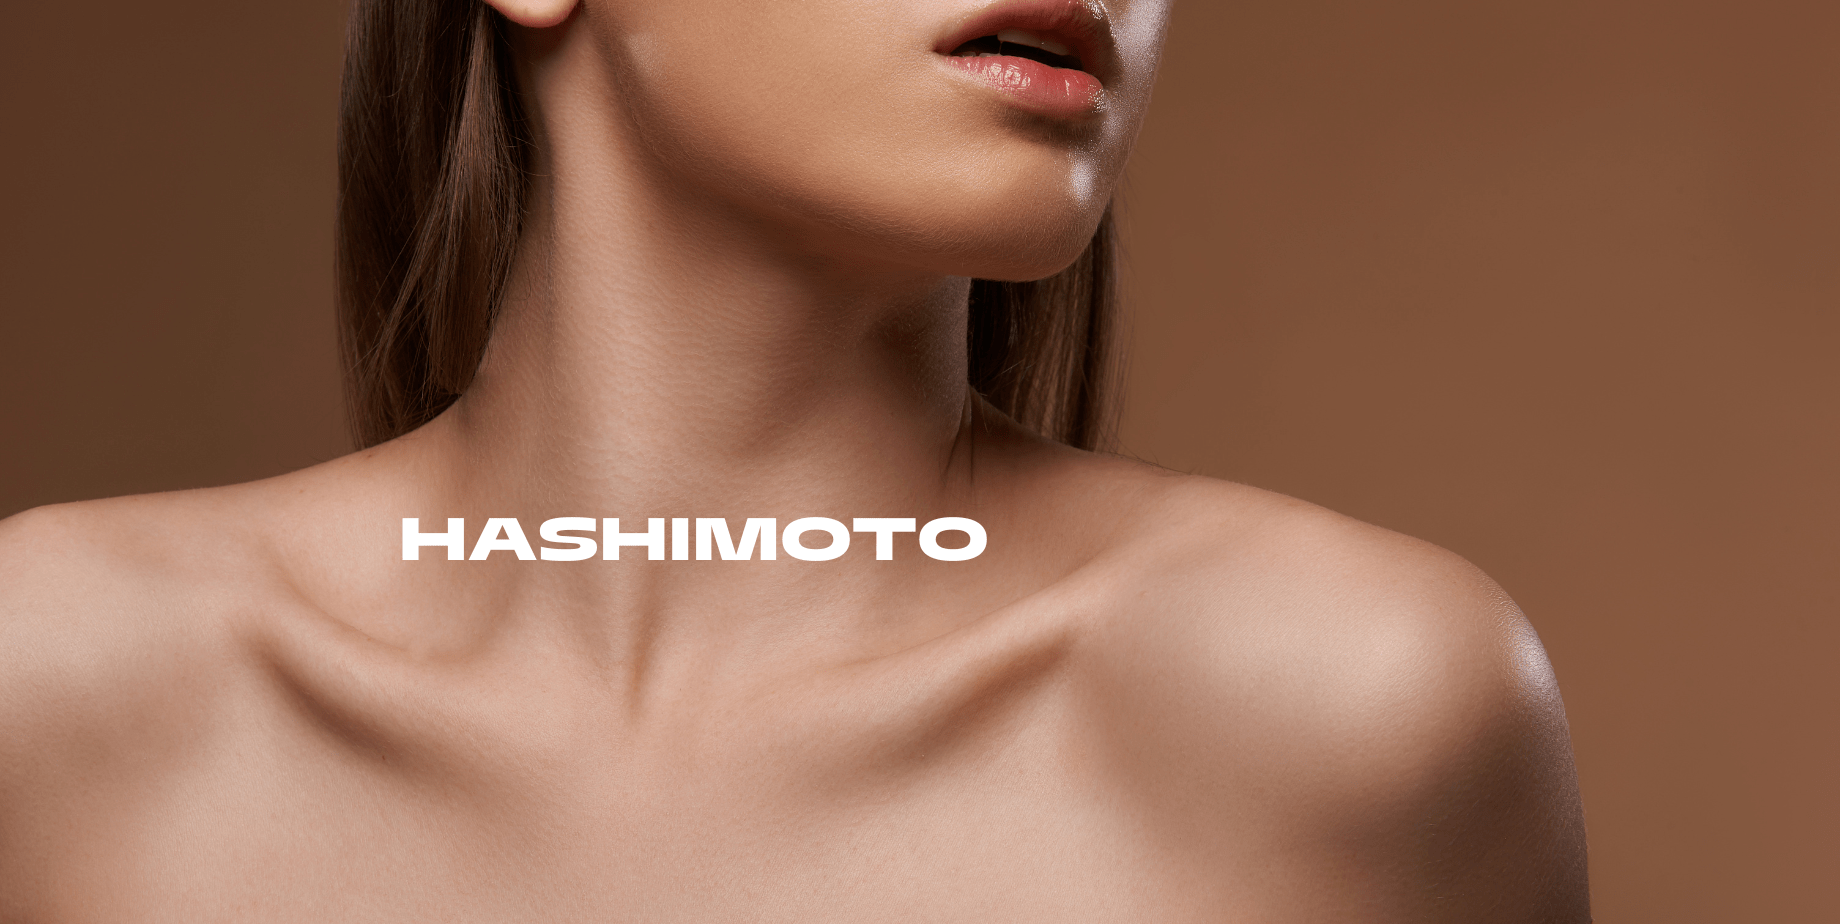 Hashimoto - co to?, objawy, diagnostyka